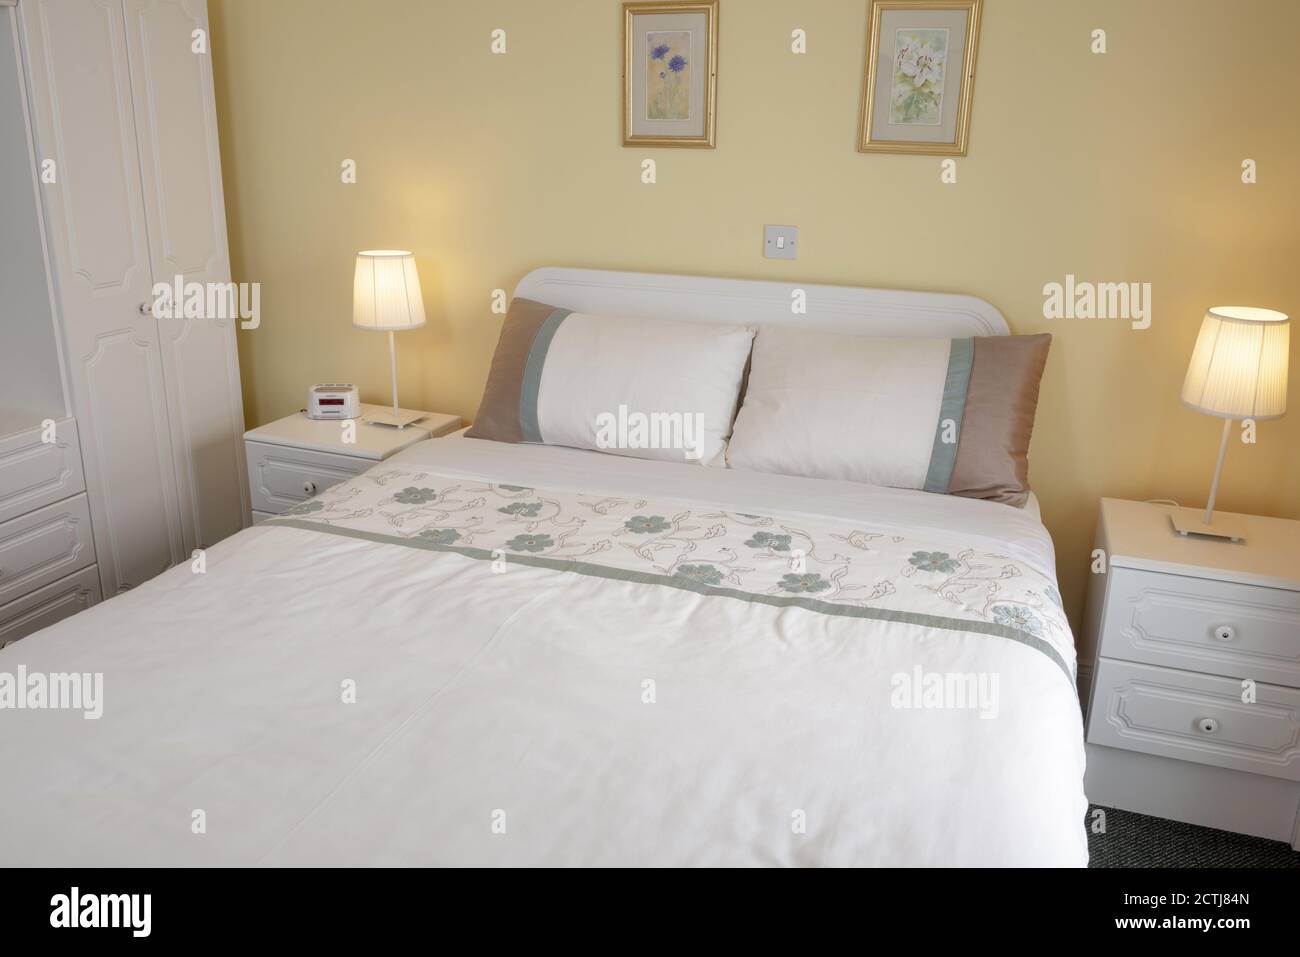 Typische King-size-Schlafzimmer-Innenausstattung in Selbstversorger-Gästehaus Und Bed and Breakfast-Wohnung Stockfoto